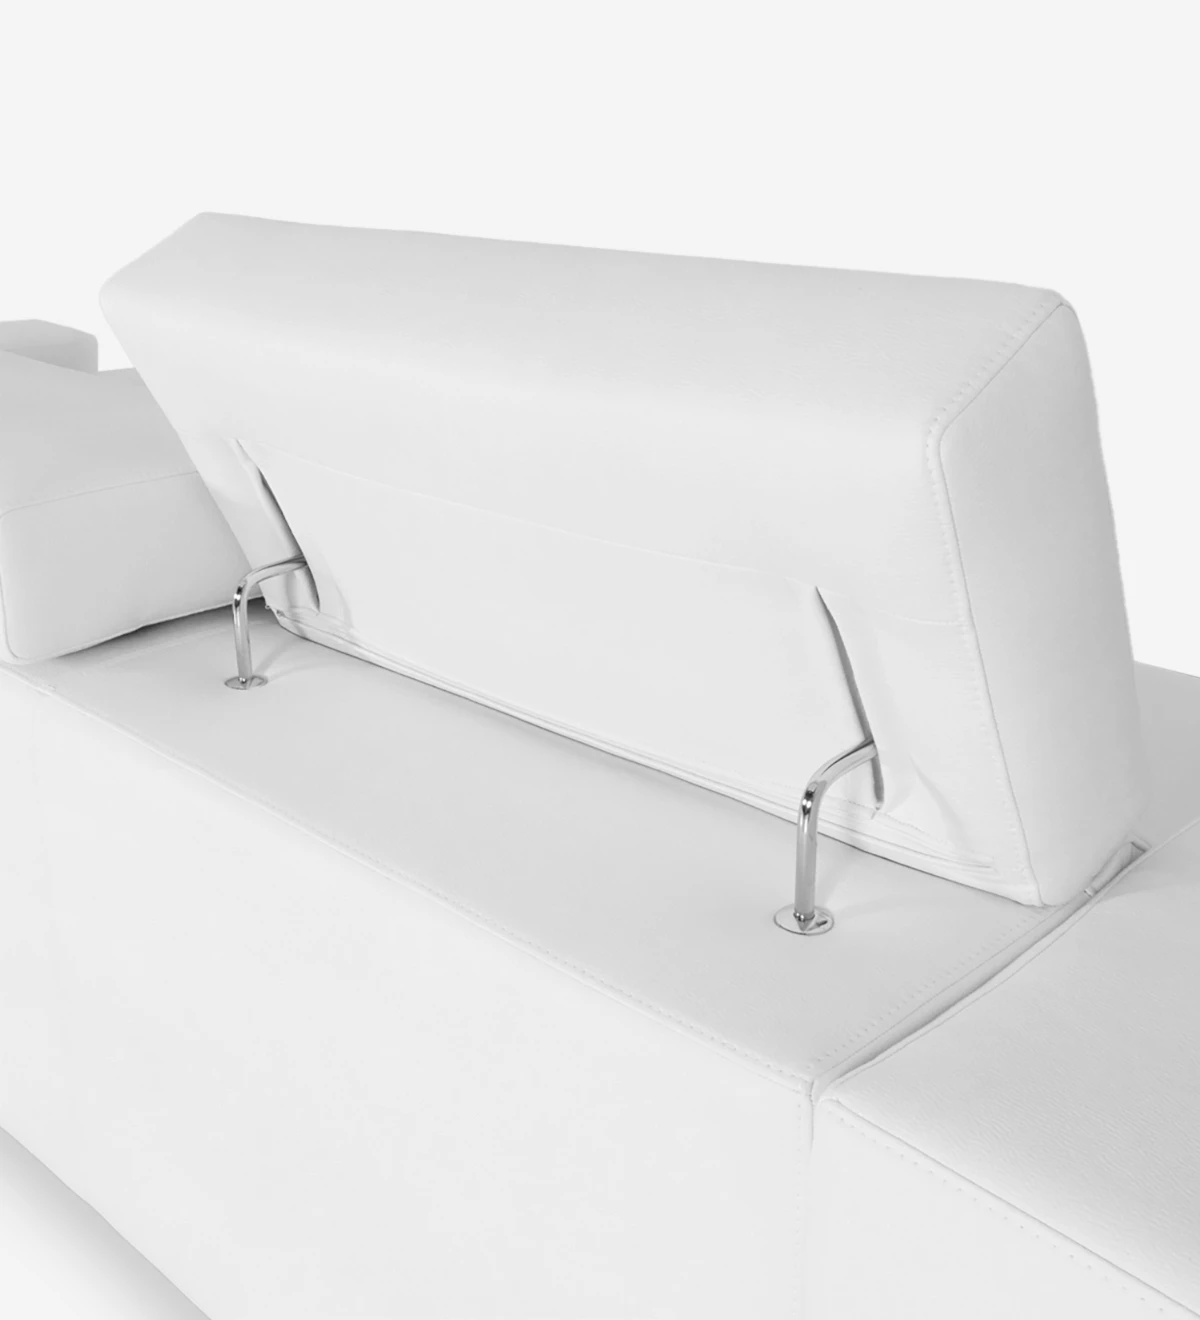 Sofá de 2 plazas con chaise longue, tapizado en ecopiel blanca, con reposacabezas reclinables.Sofá de 2 plazas con chaise longue, tapizado en ecopiel blanca, con reposacabezas reclinables.